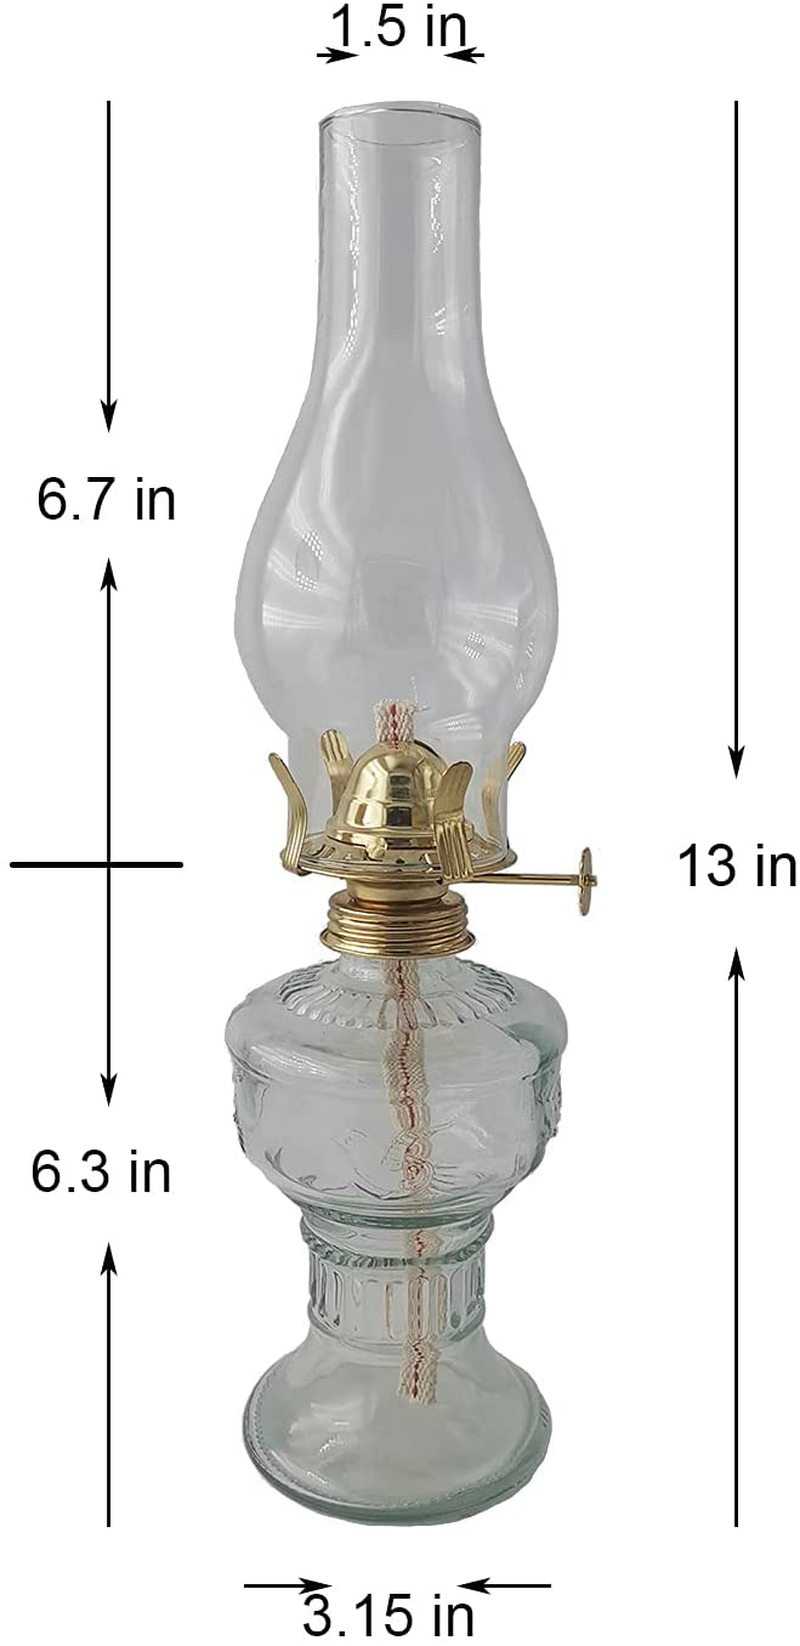 Oil-Lamp Vintage Glass Kerosene-Lantern - 13''Chamber Oil Lamp (13 in)